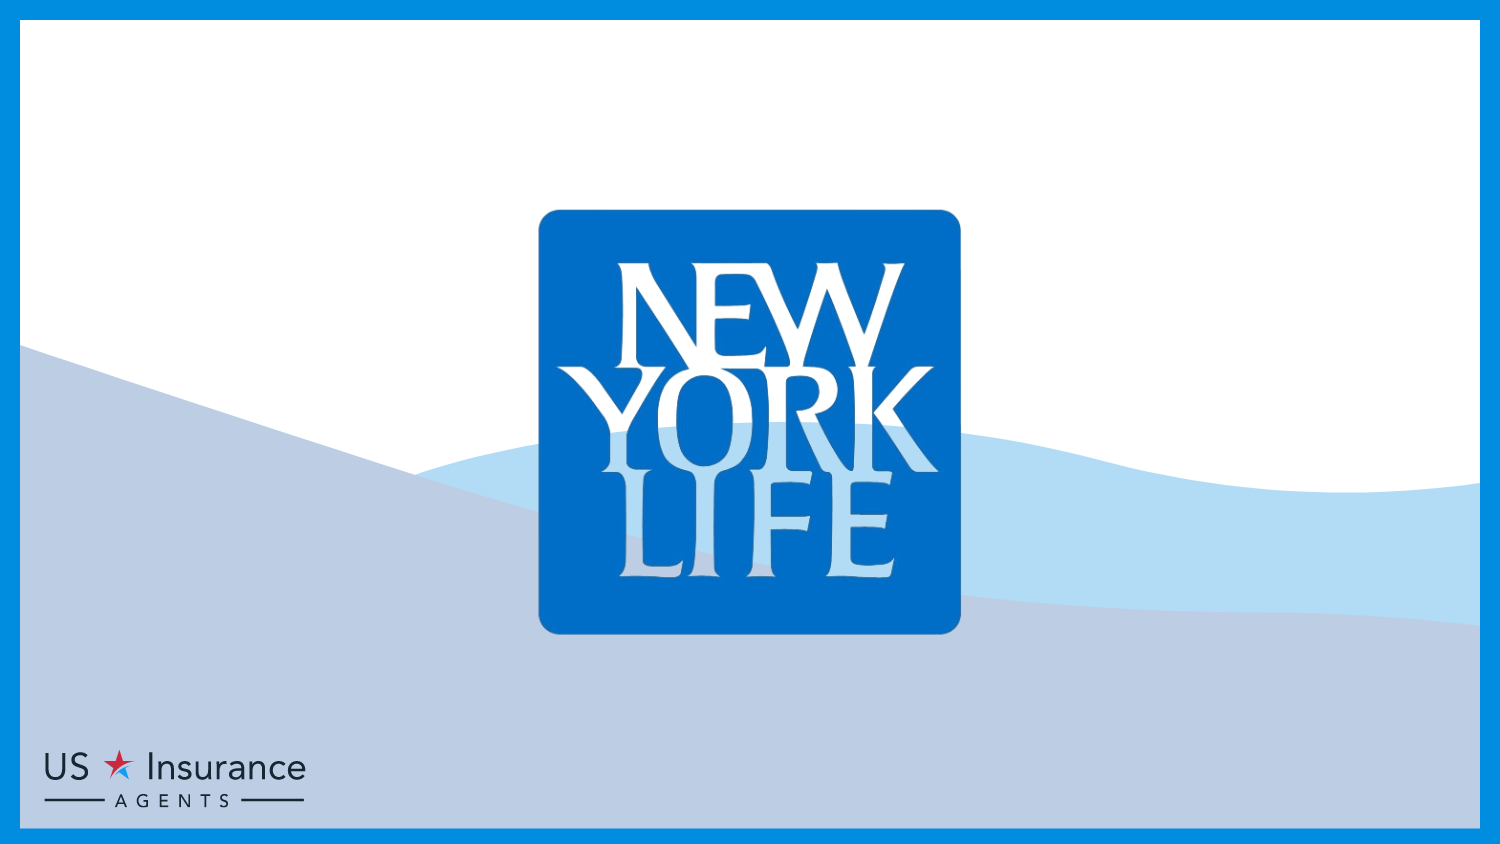 New York Life: Best Life Insurance for Teachers